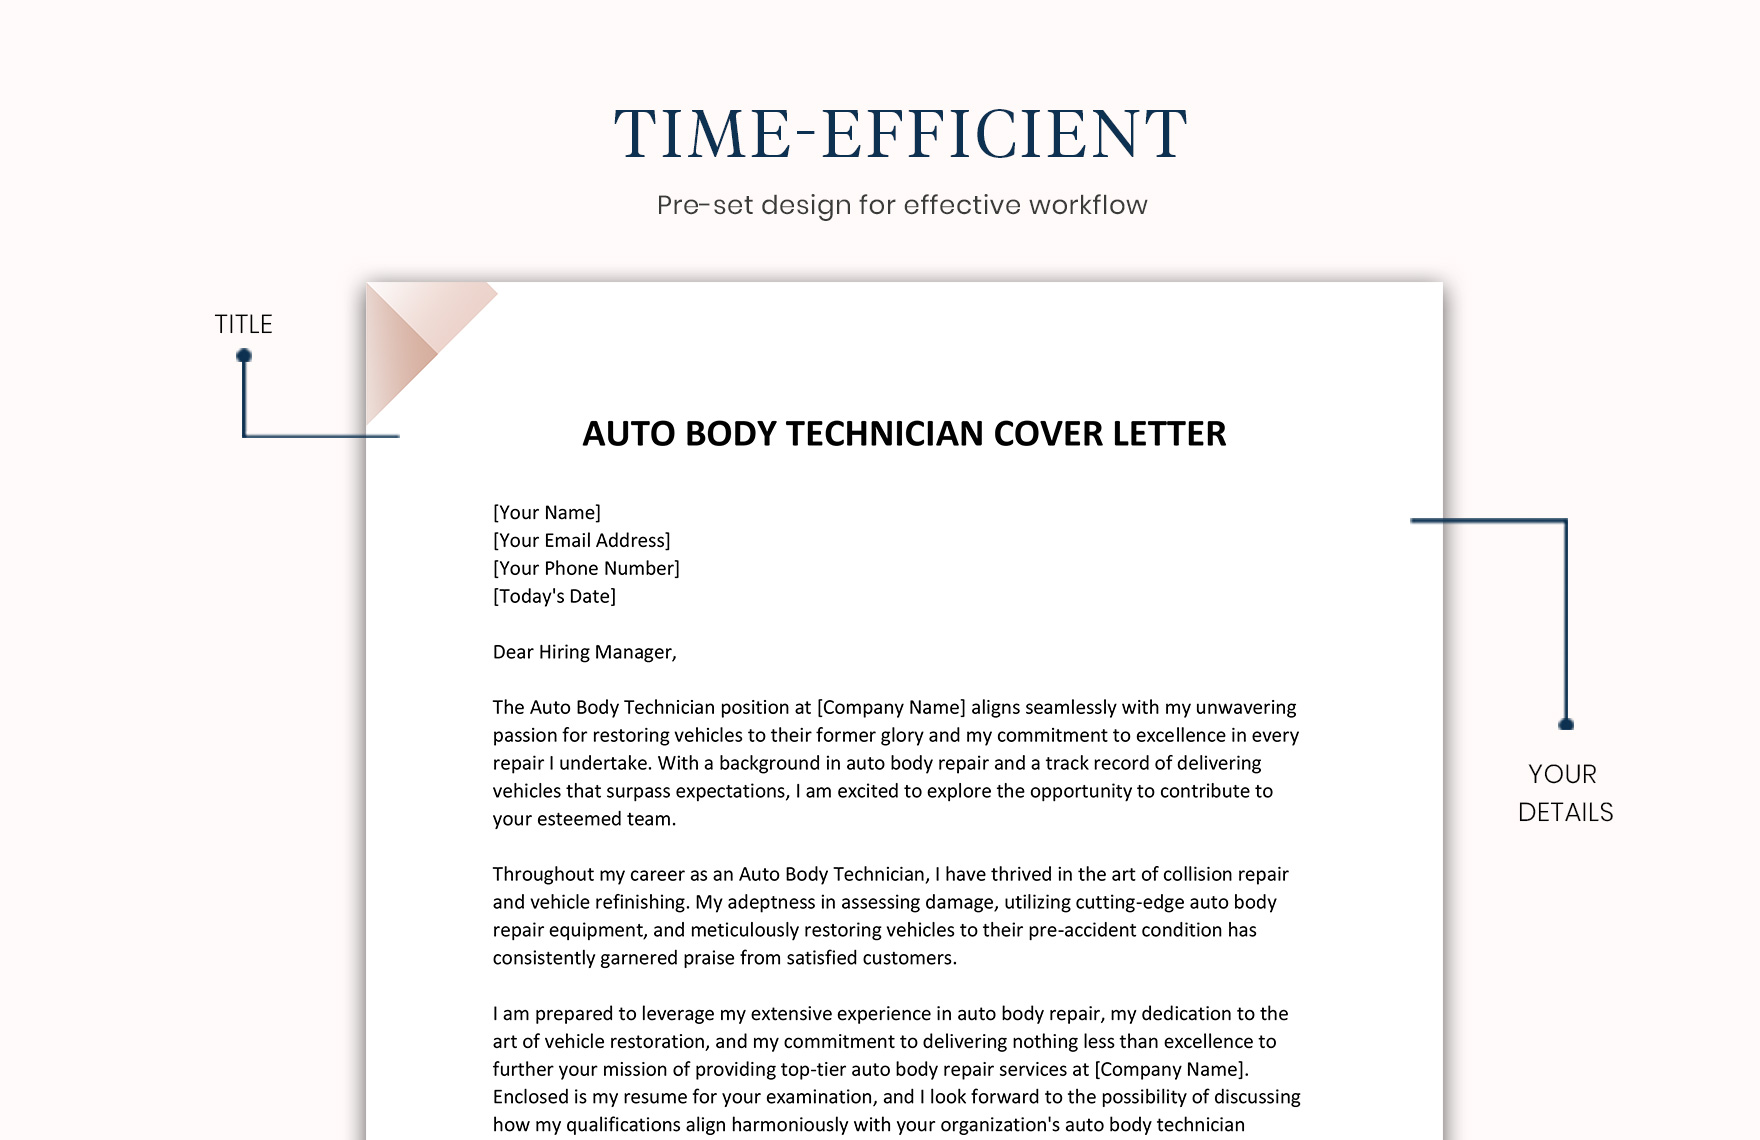 Auto Body Technician Cover Letter